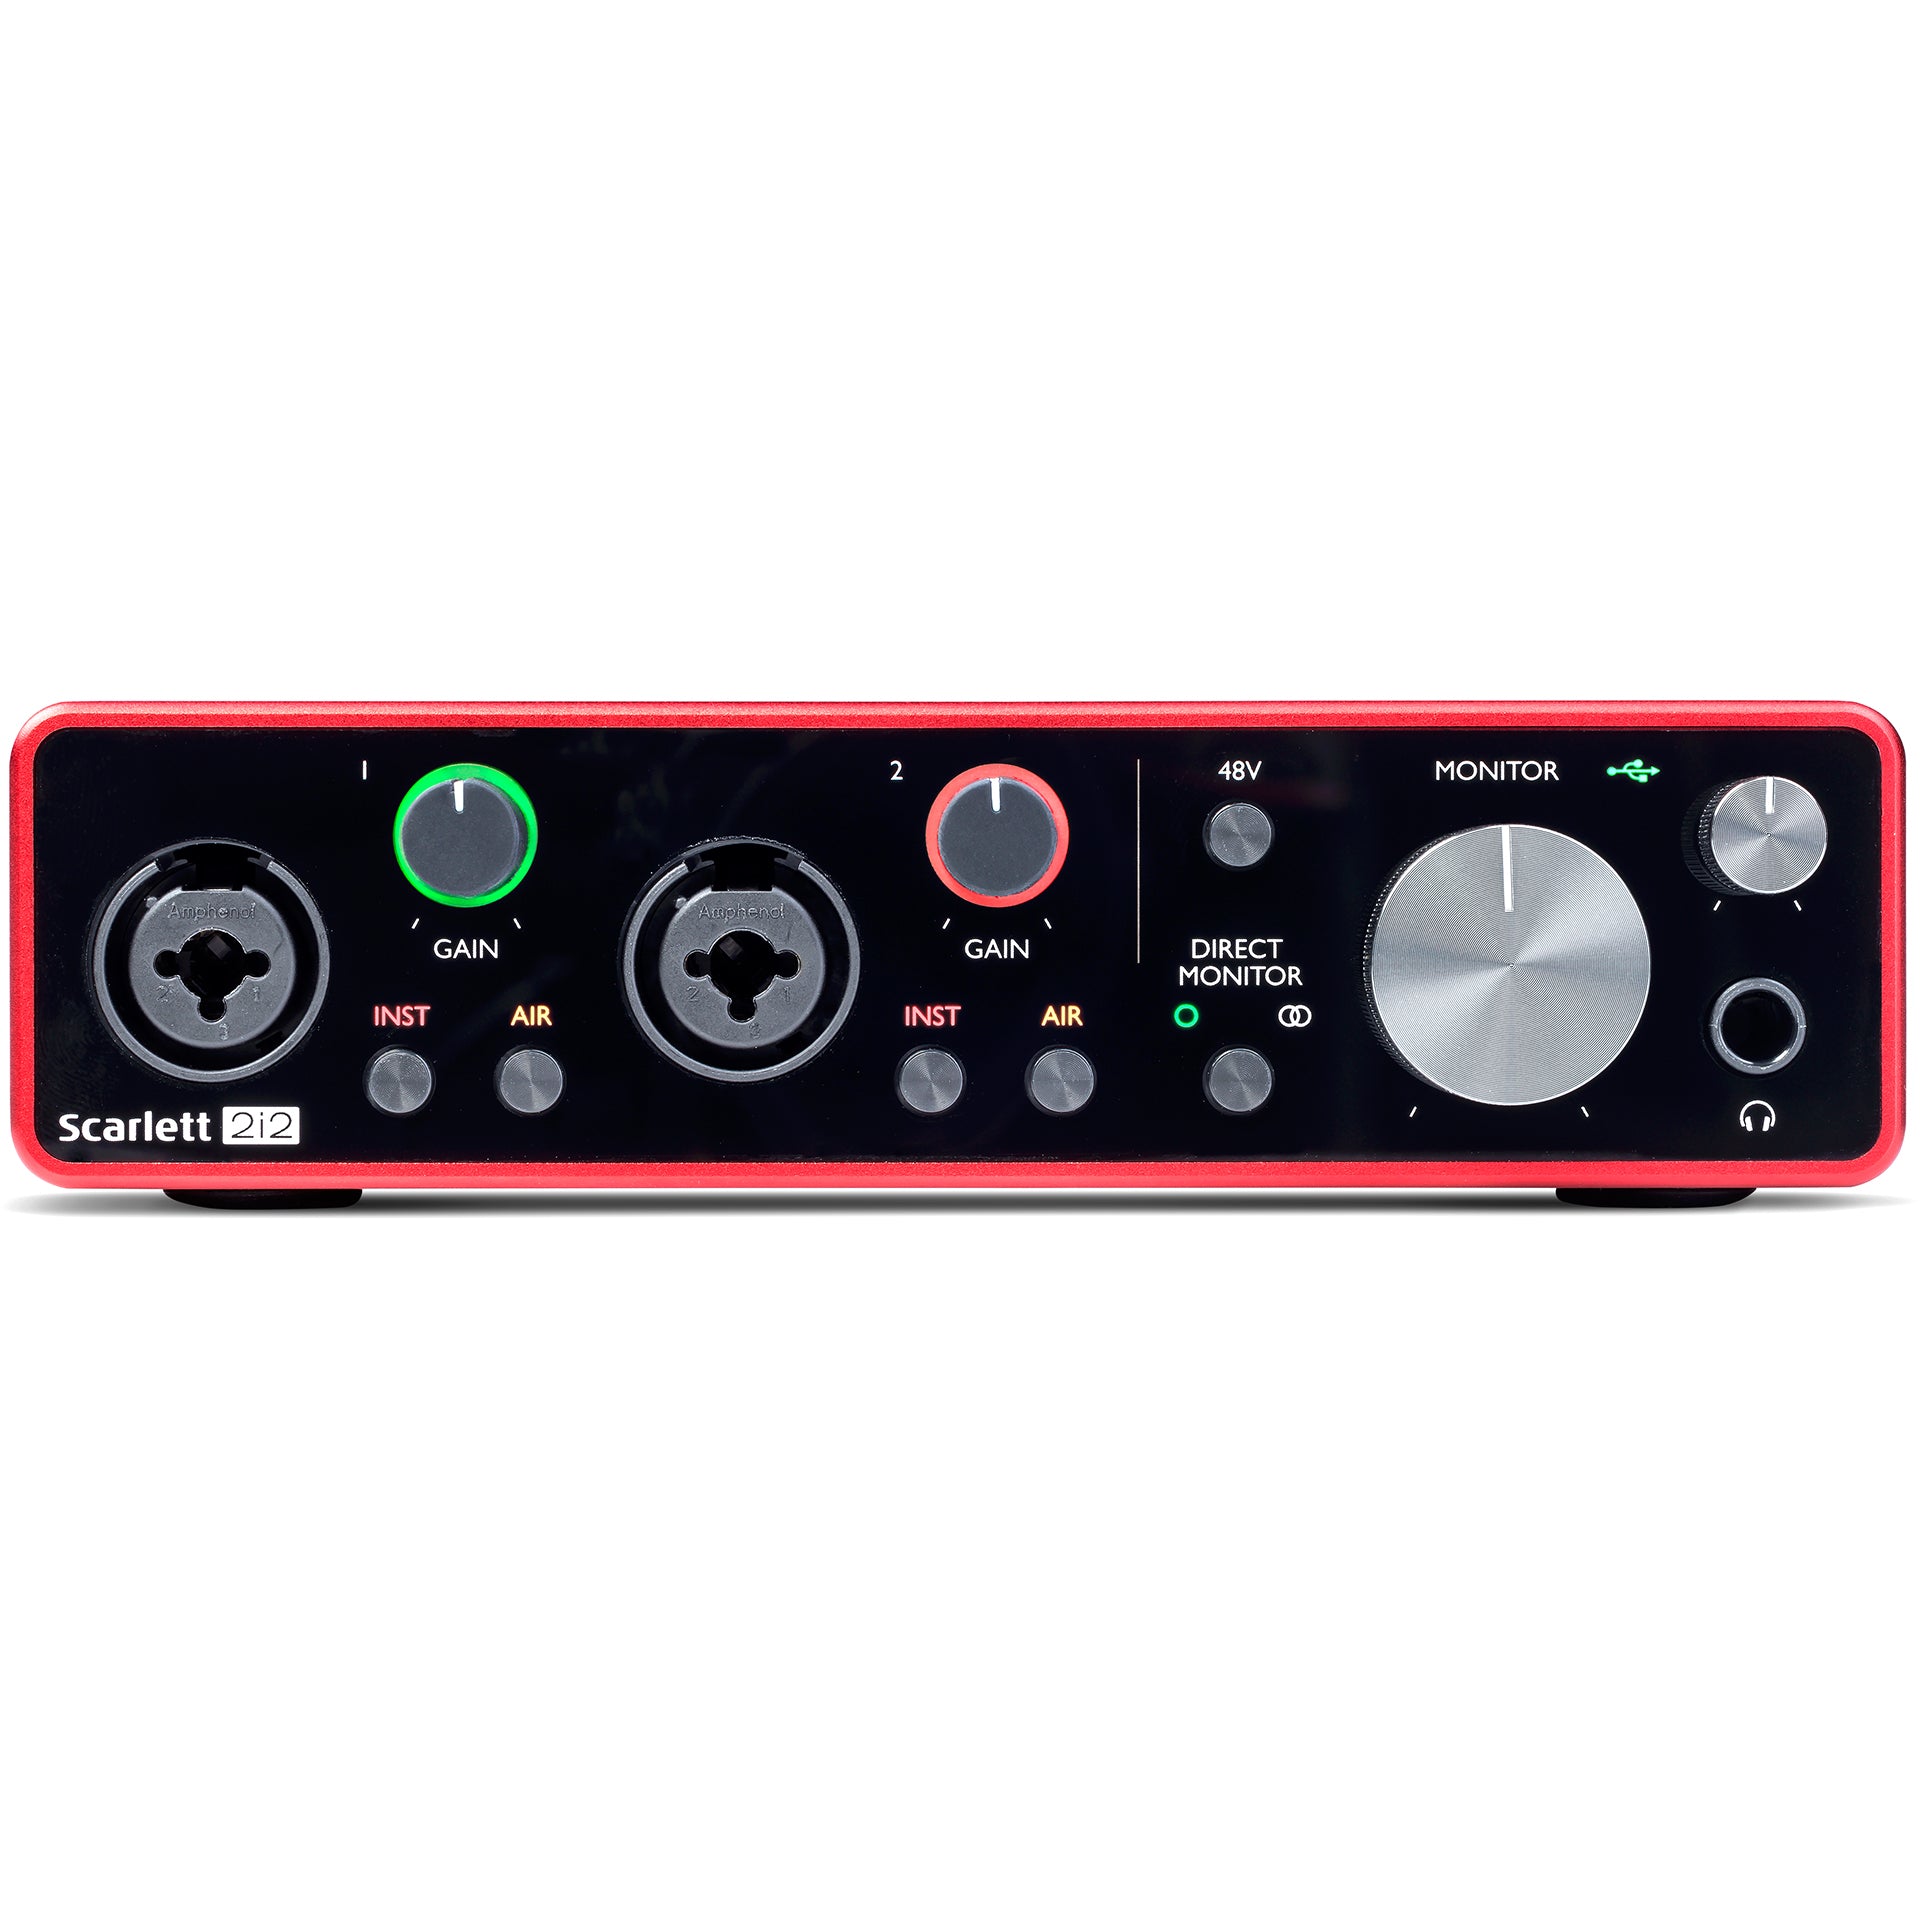 Focusrite Scarlett Solo 3rd Gen 2-Channel Pro Audio Interface